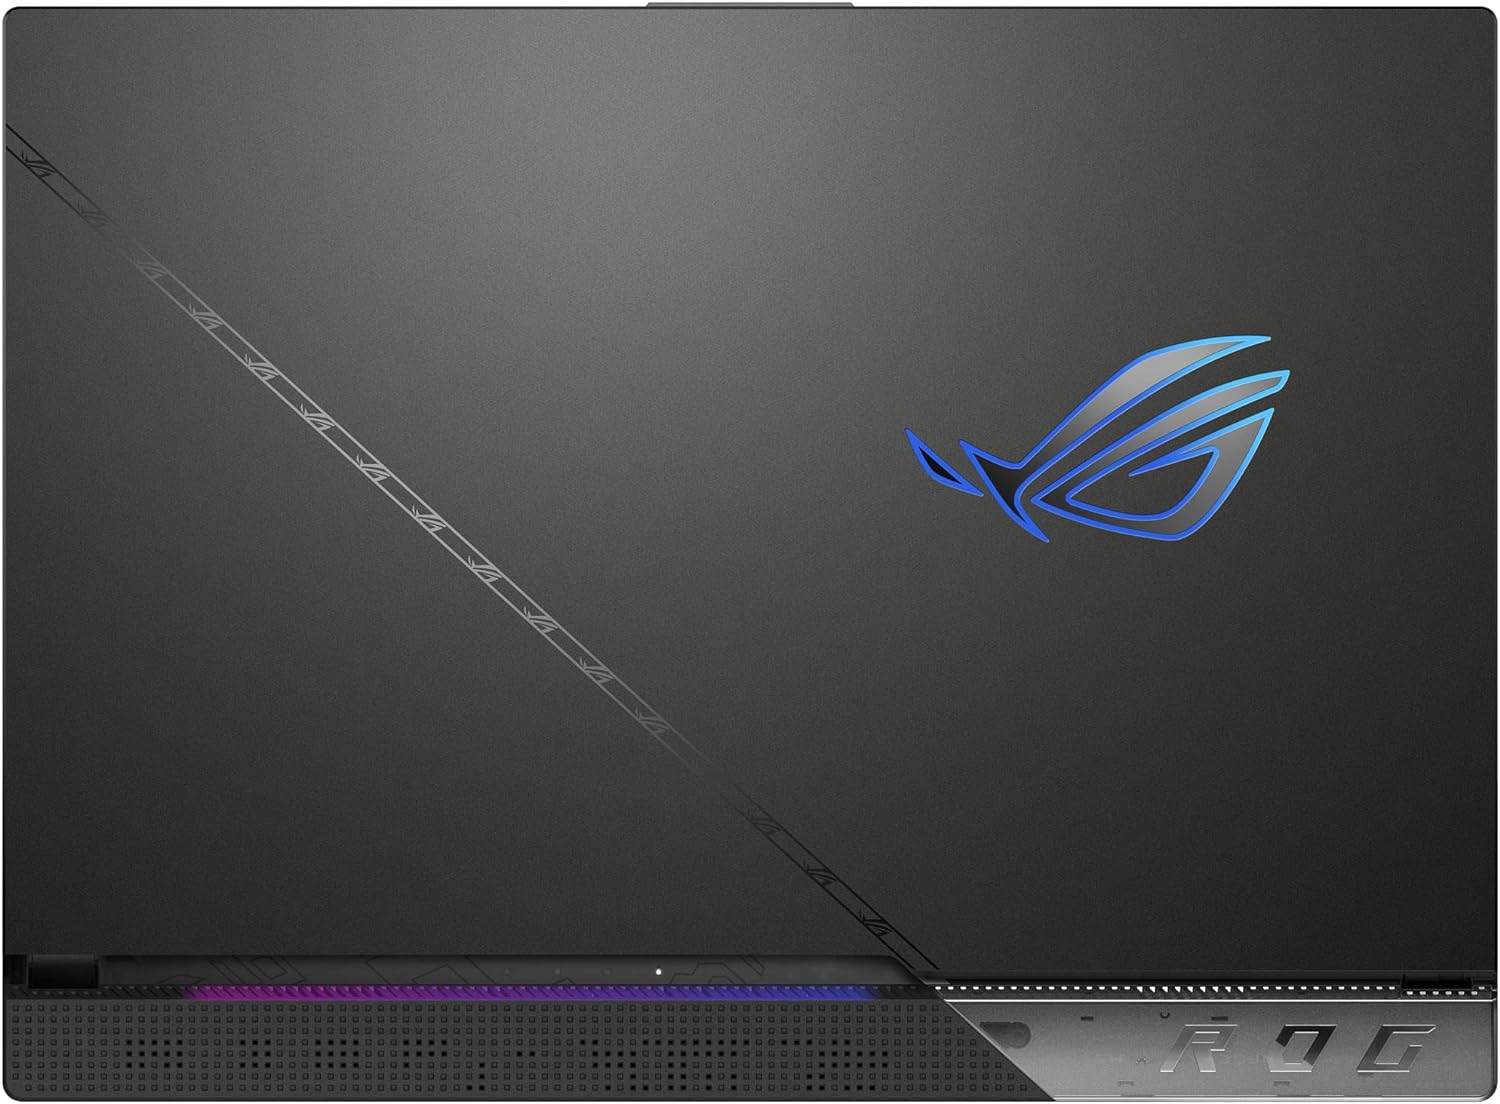 ASUS ROG Strix Scar 15 Gaming Laptop Review